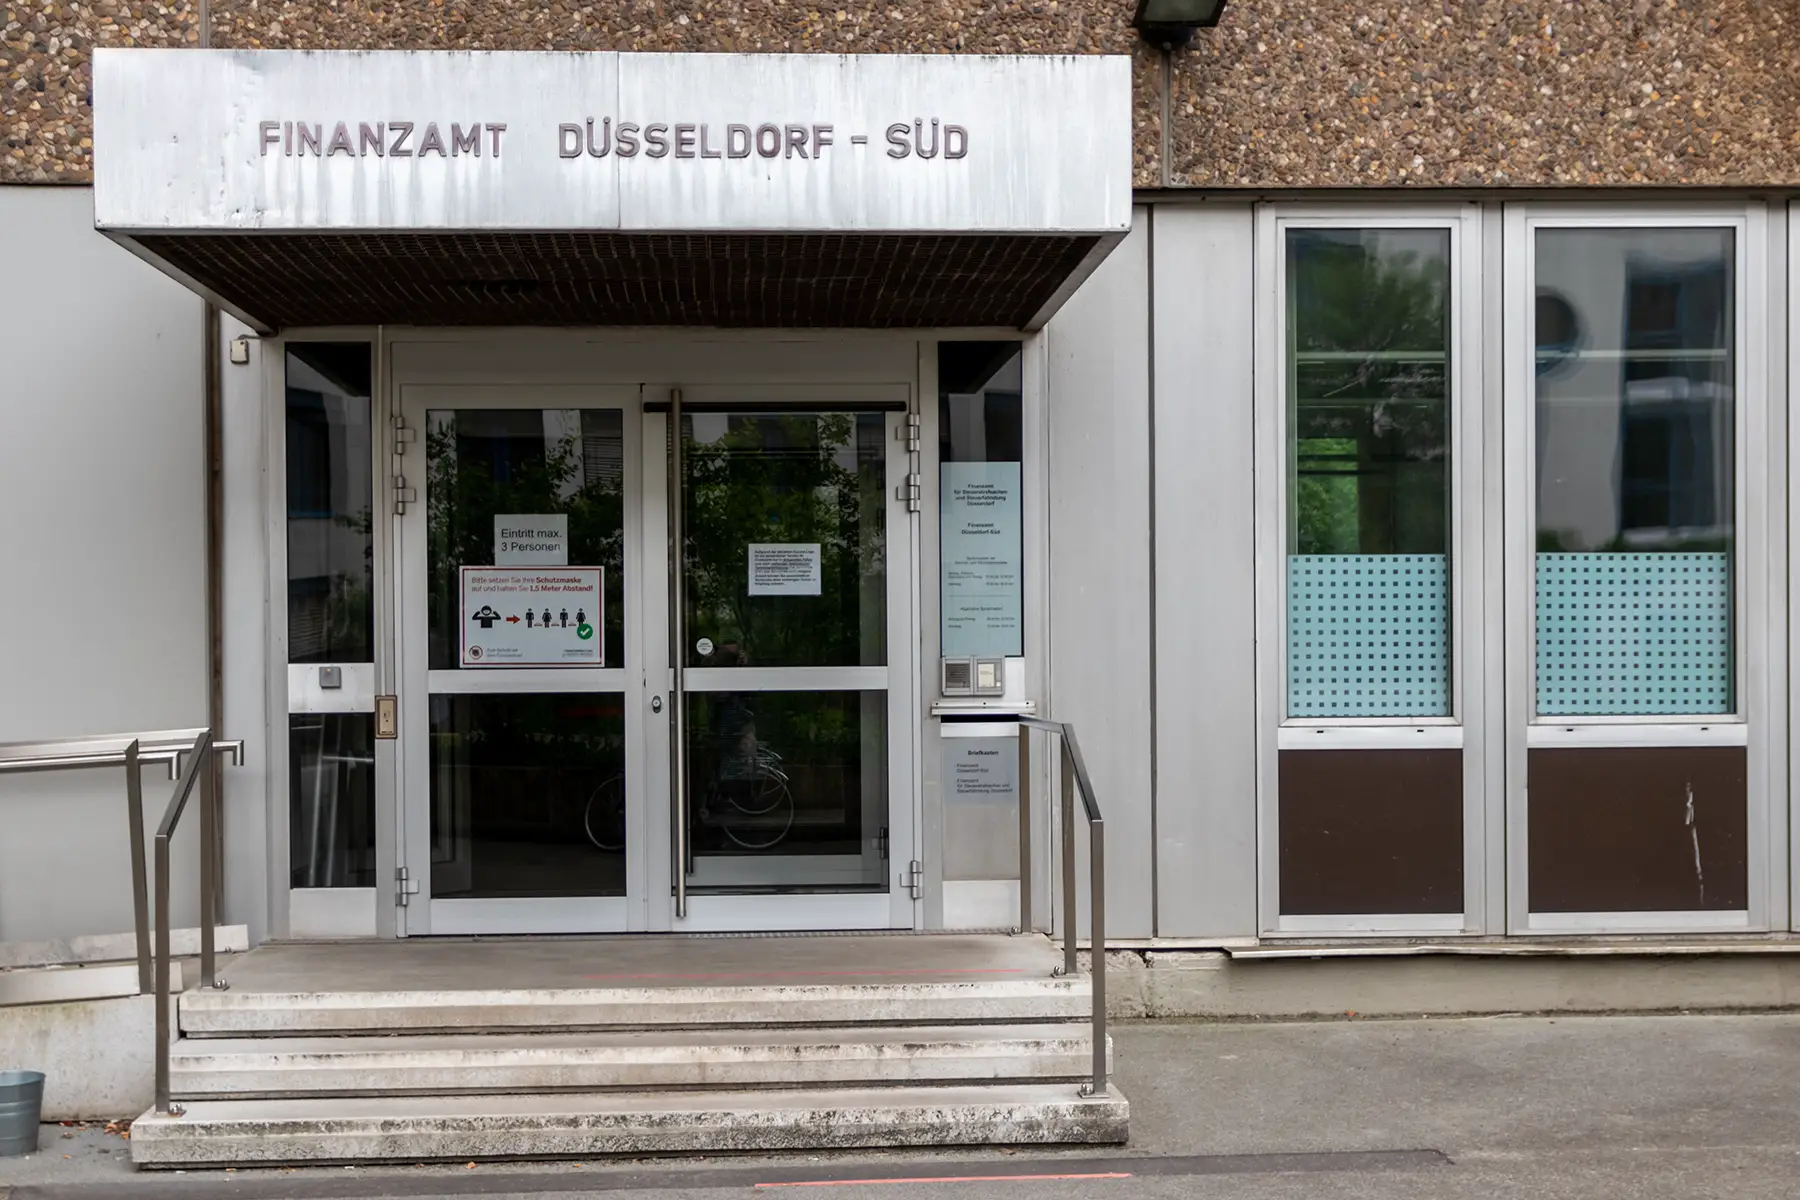 Finanzamt office exterior in Düsseldorf